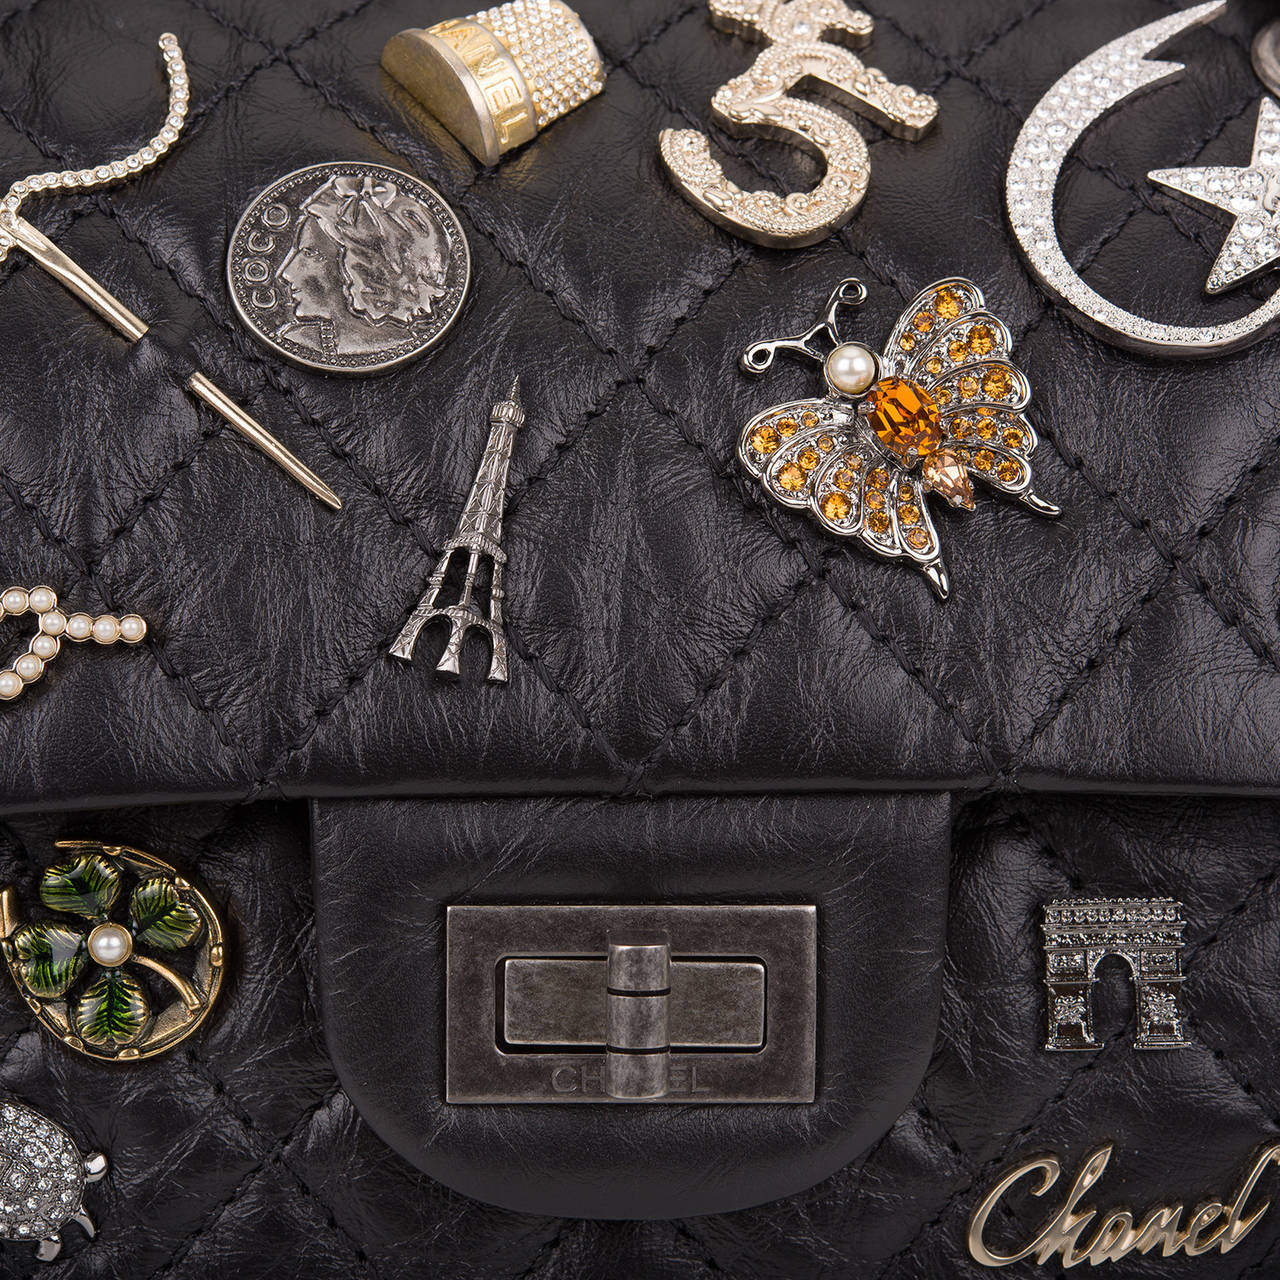 Women's Chanel Black Reissue 2.55 Lucky Charm Bag